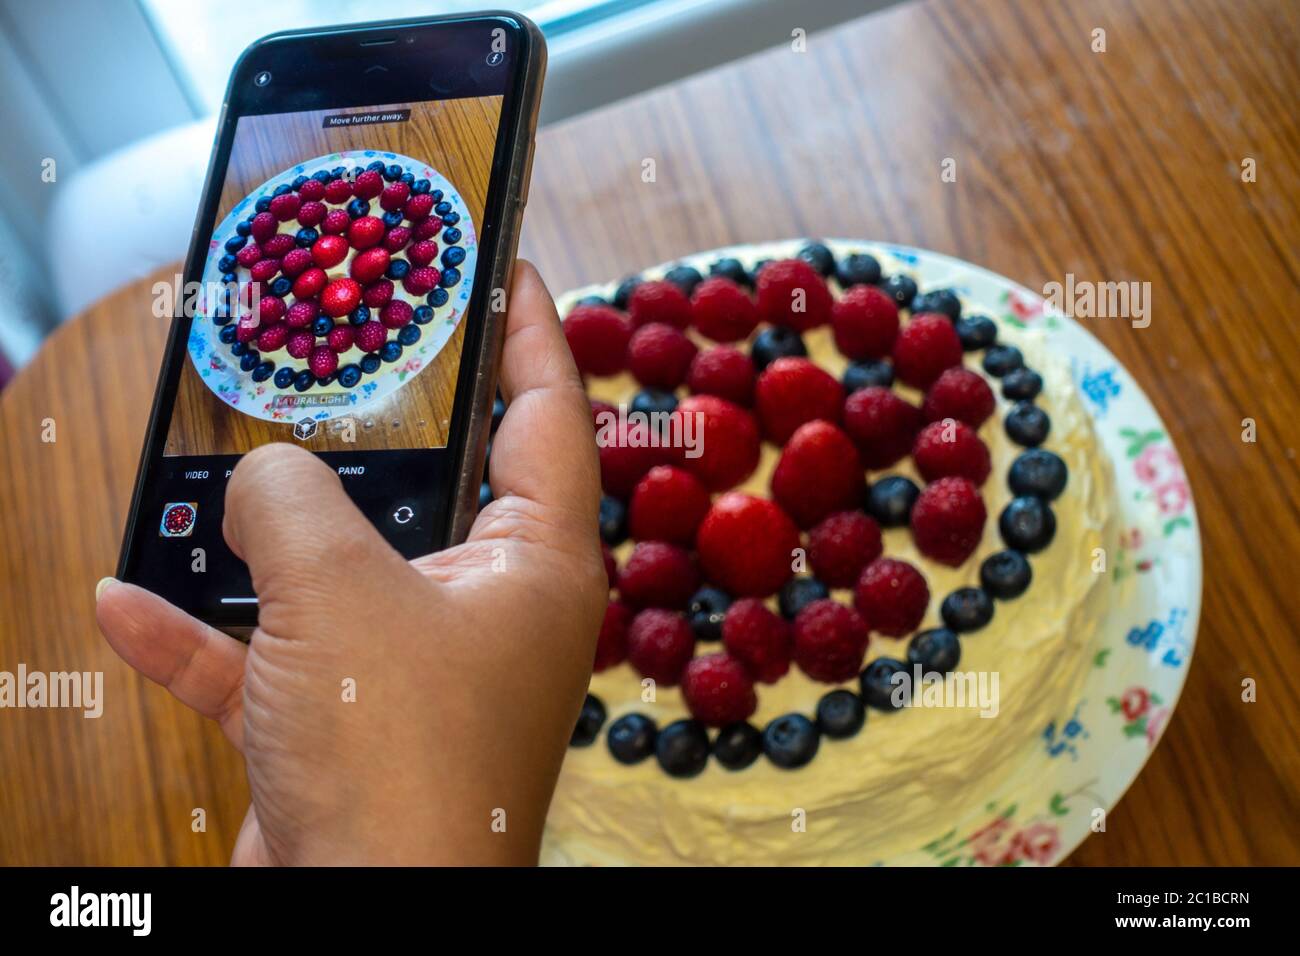 Eine Dame fotografiert mit einem Smartphone einen frisch gebackenen Kuchen, der mit Buttereier und weichen roten und violetten Sommerfrüchten verziert ist Stockfoto